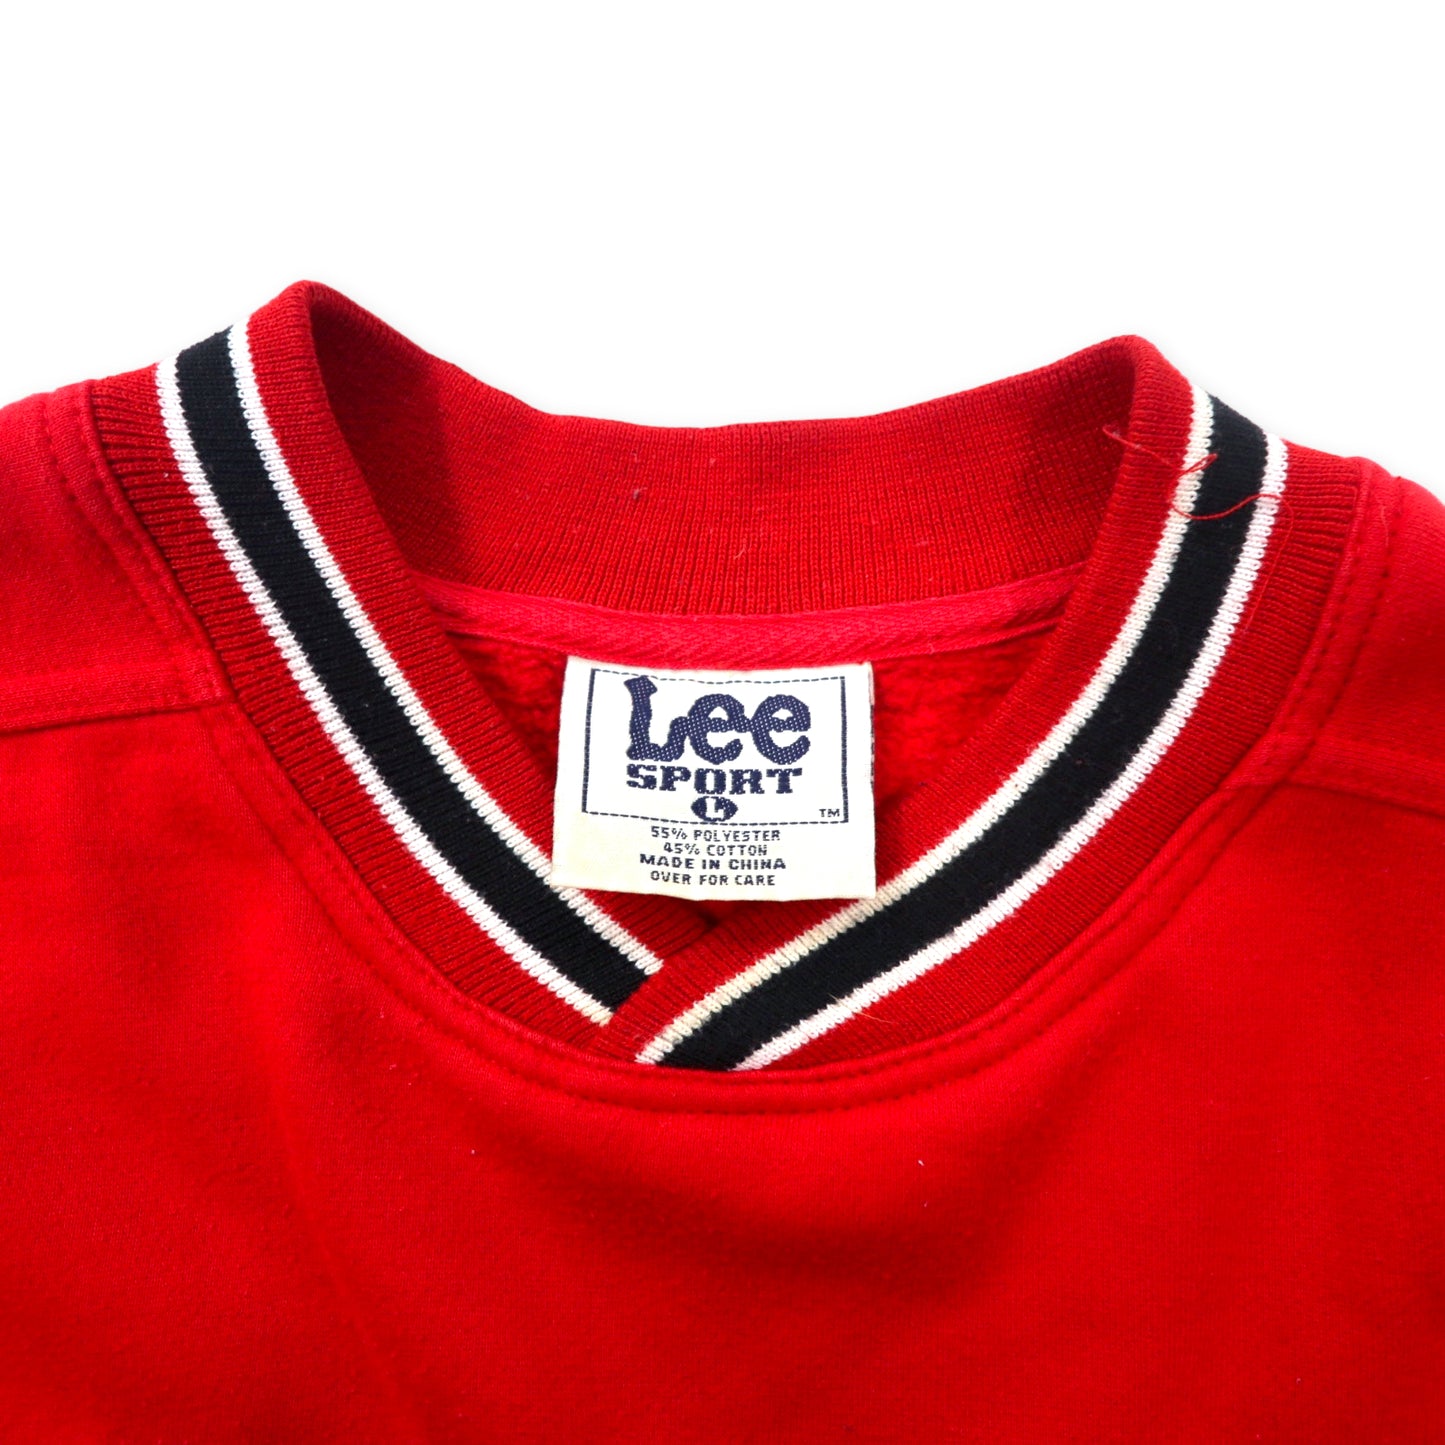 Lee SPORT 90年代 カレッジ刺繍 リブライン スウェット L レッド コットン ポリエステル 裏起毛 NCAA OHIO STATE BUCKEYES フットボール ビッグサイズ